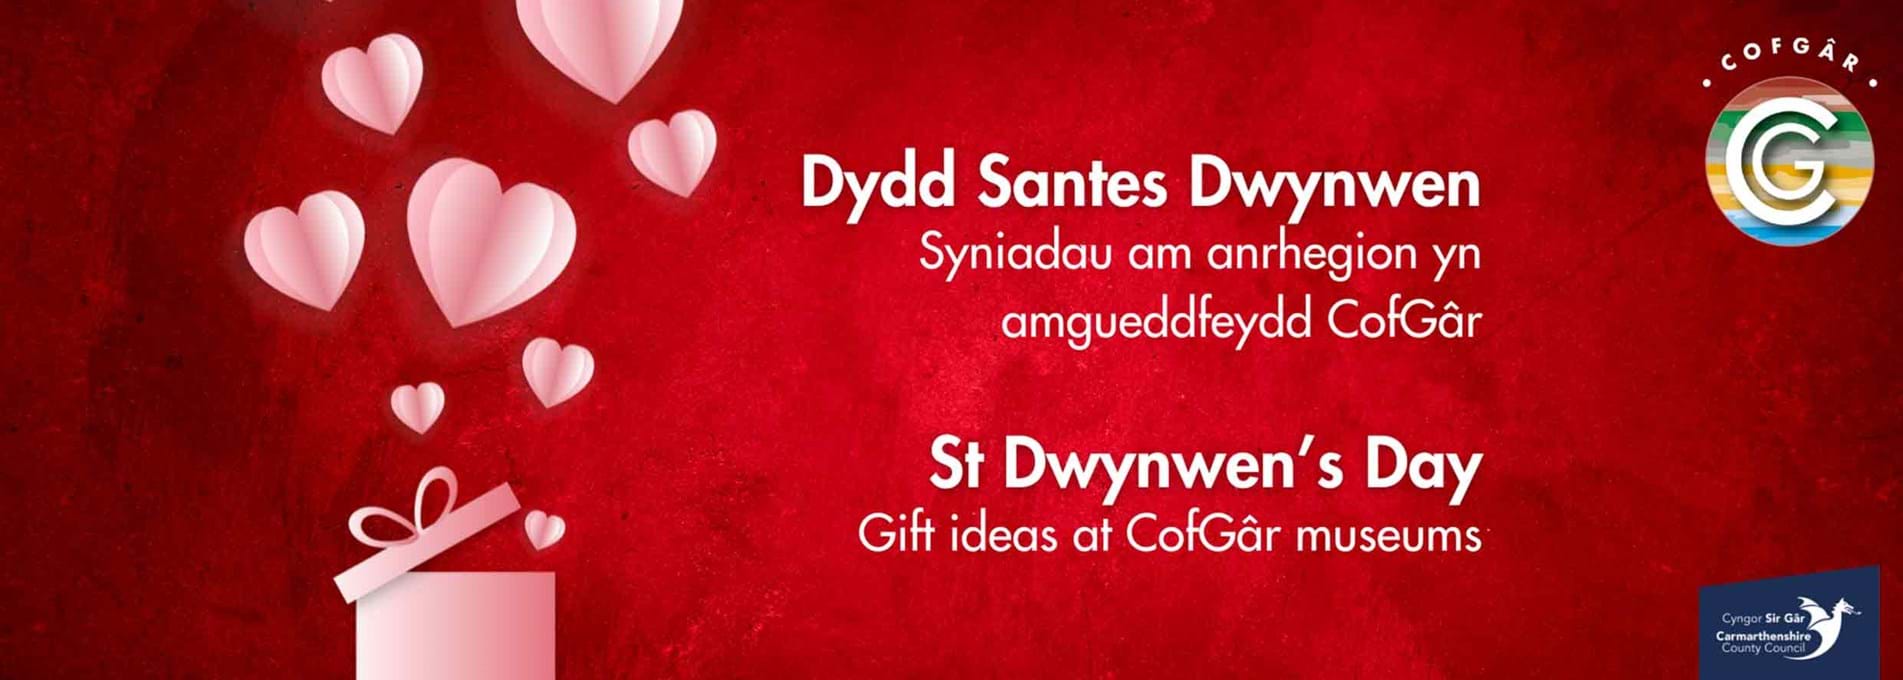 St Dwynwen's Day Gift Ideas